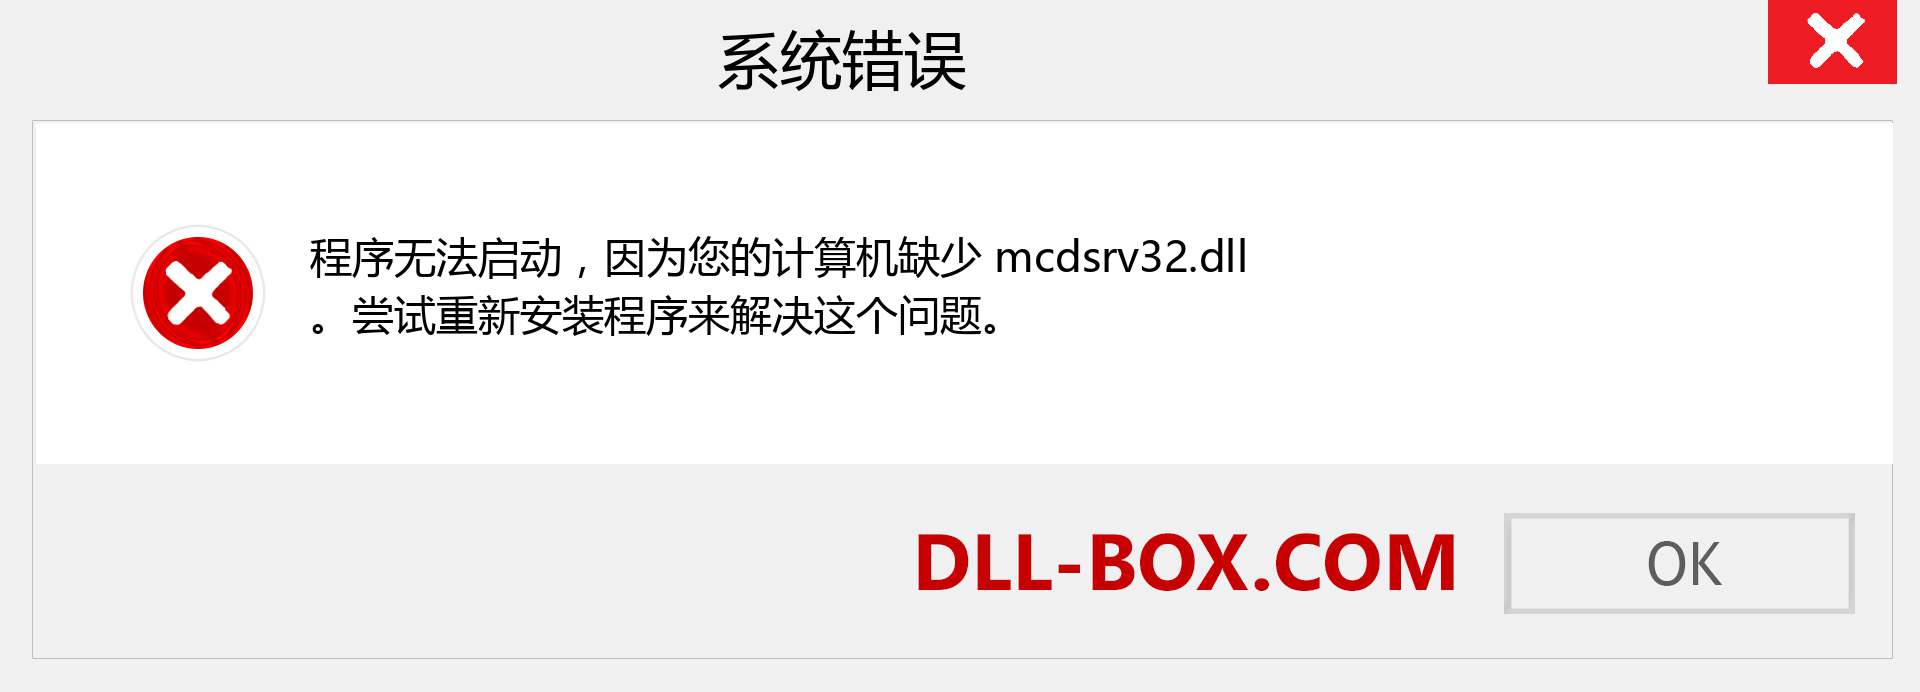 mcdsrv32.dll 文件丢失？。 适用于 Windows 7、8、10 的下载 - 修复 Windows、照片、图像上的 mcdsrv32 dll 丢失错误